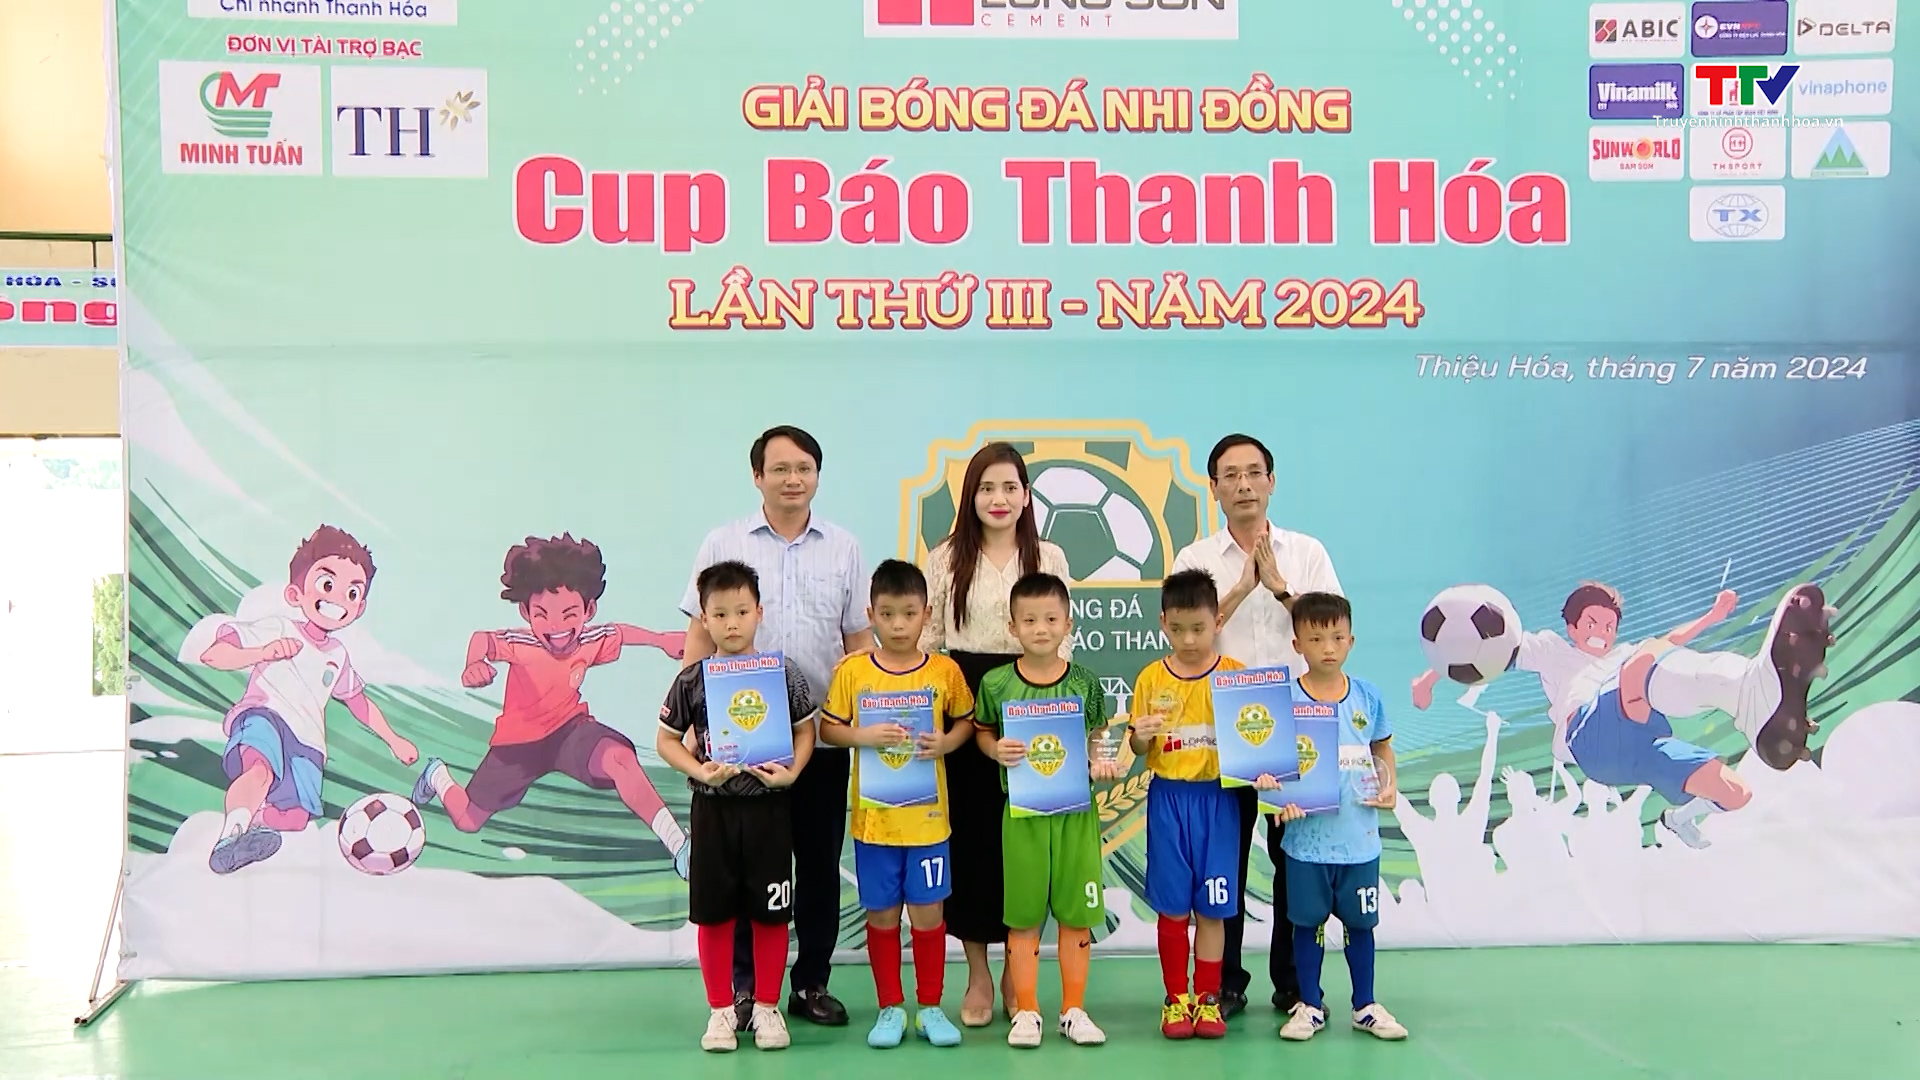 U8 thành phố Thanh Hóa và U10 Hà Trung vô địch Giải Bóng đá Nhi đồng Cup Báo Thanh Hóa lần thứ III năm 2024- Ảnh 2.